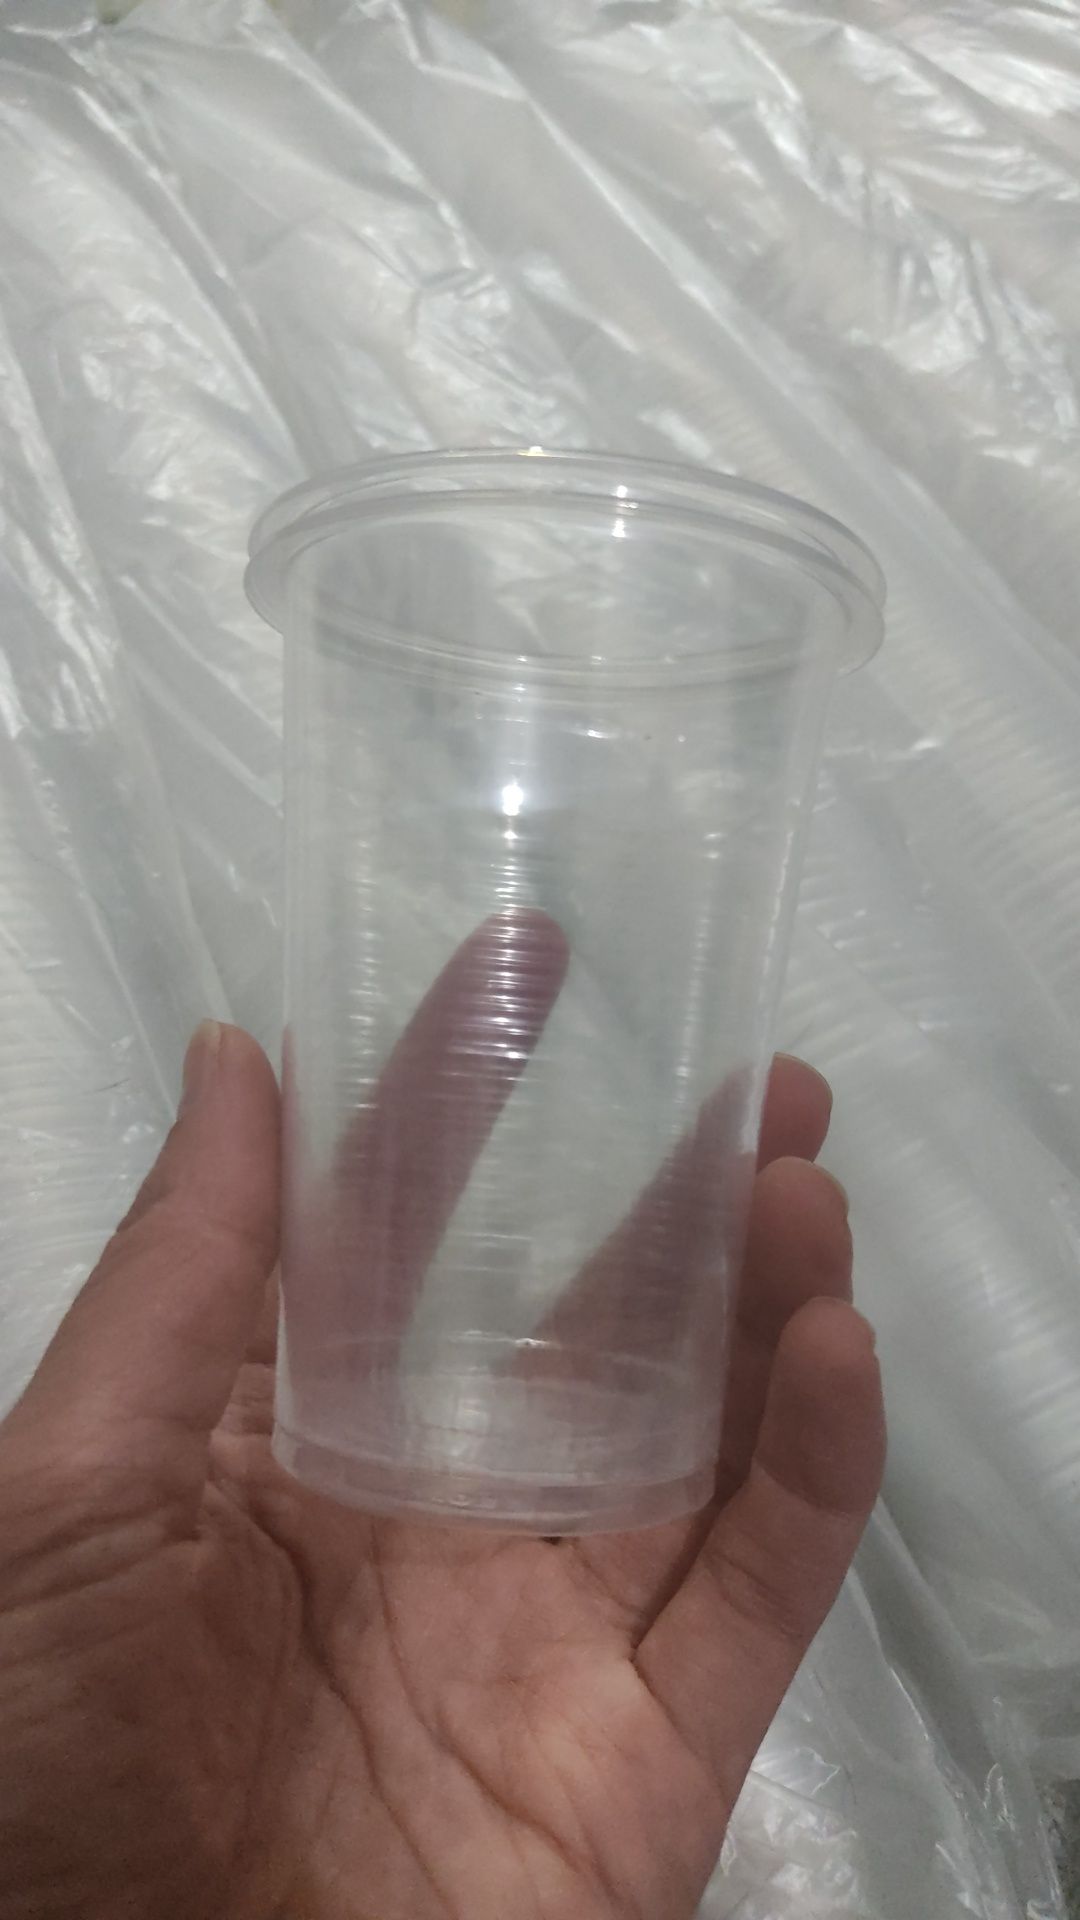 Одноразовые пластиковые стаканчики